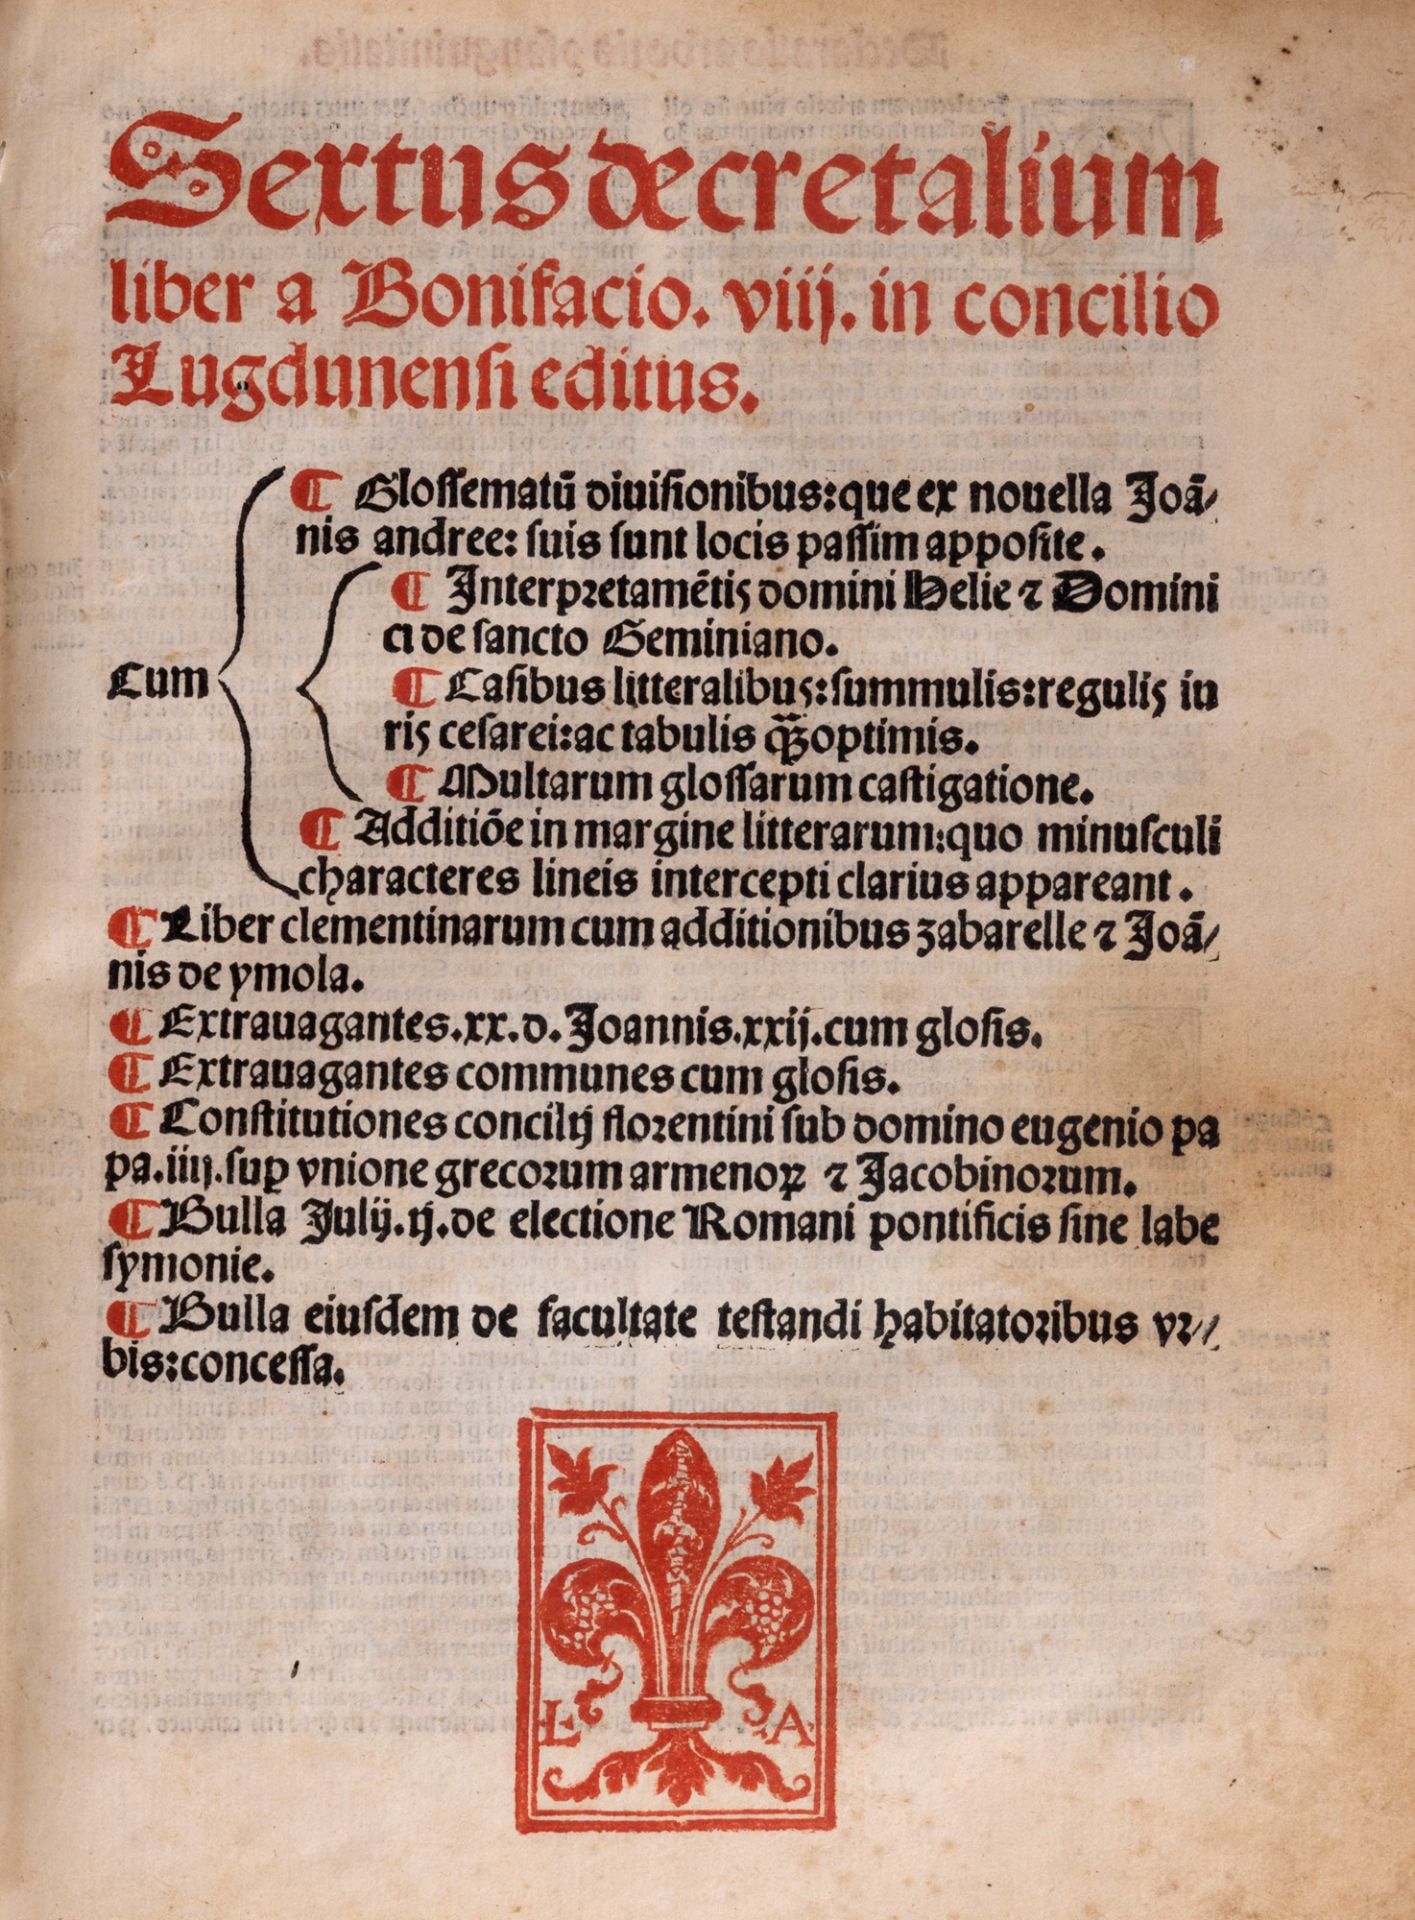 Bonifacio VIII - Sextus decretalium liber to Boniface VIII in council Lugdunensi editus